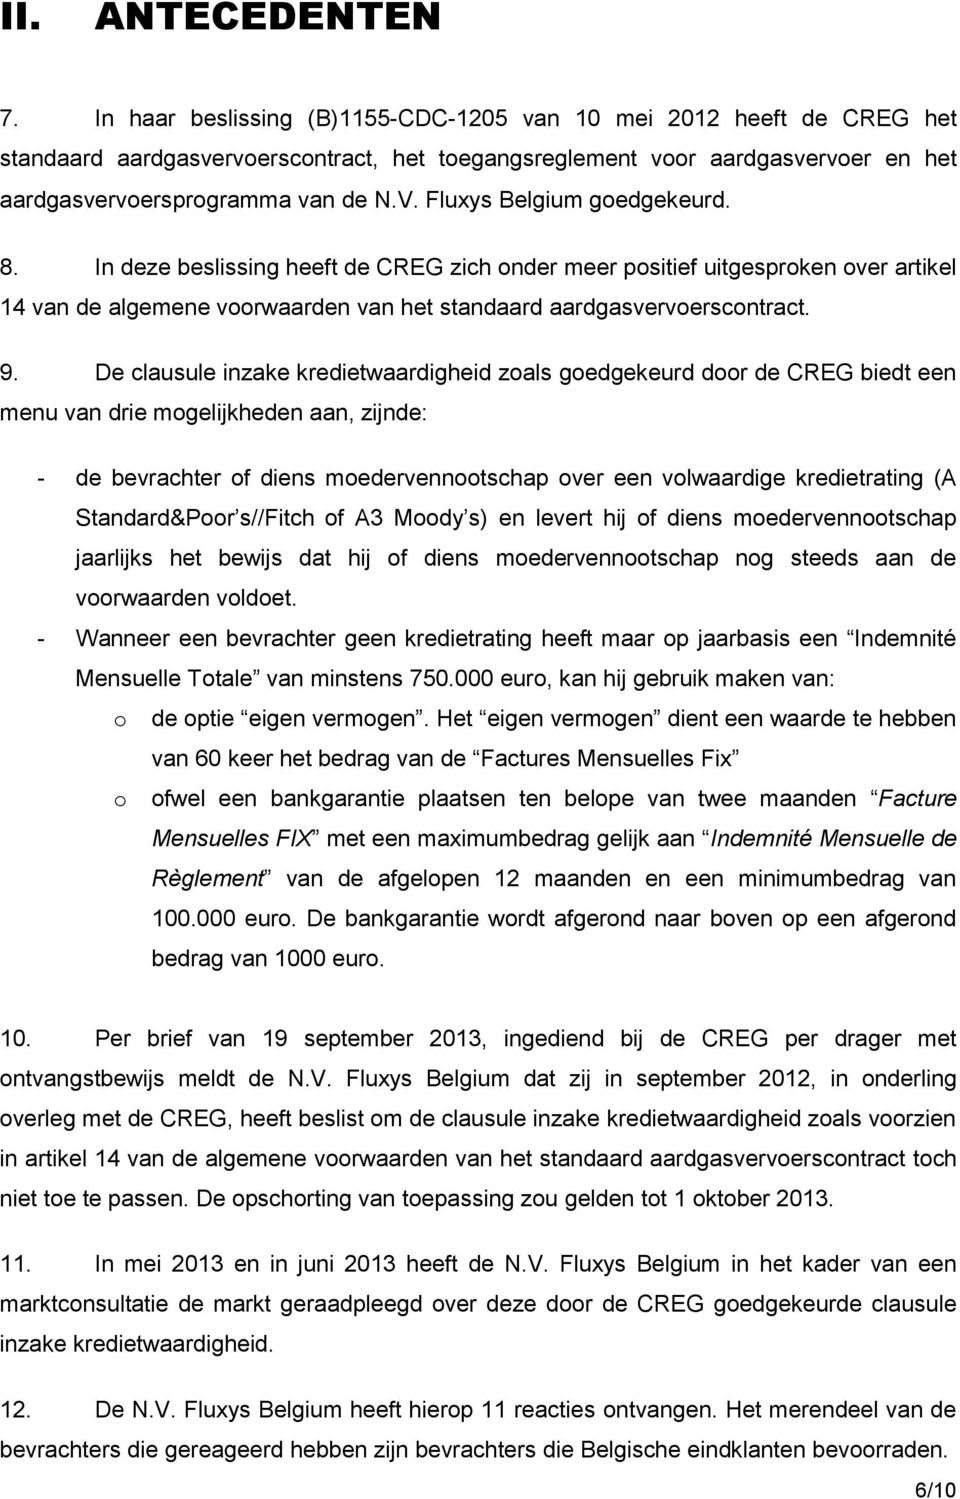 Fluxys Belgium goedgekeurd. 8. In deze beslissing heeft de CREG zich onder meer positief uitgesproken over artikel 14 van de algemene voorwaarden van het standaard aardgasvervoerscontract. 9.